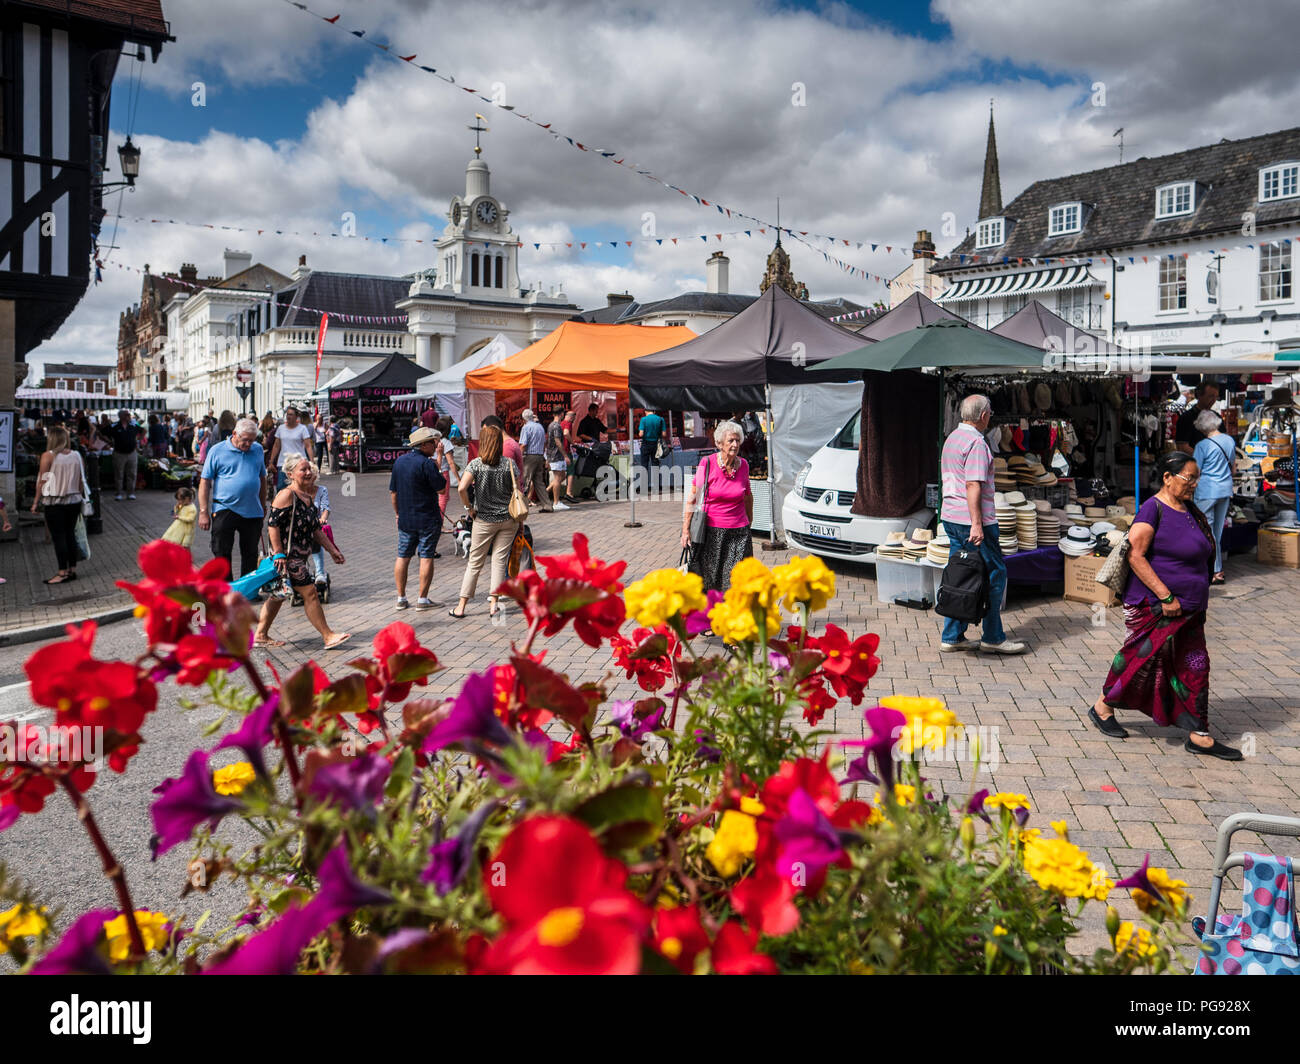 Saffron Walden Market Square - Market day in the North Essex town of Saffron Walden Stock Photo